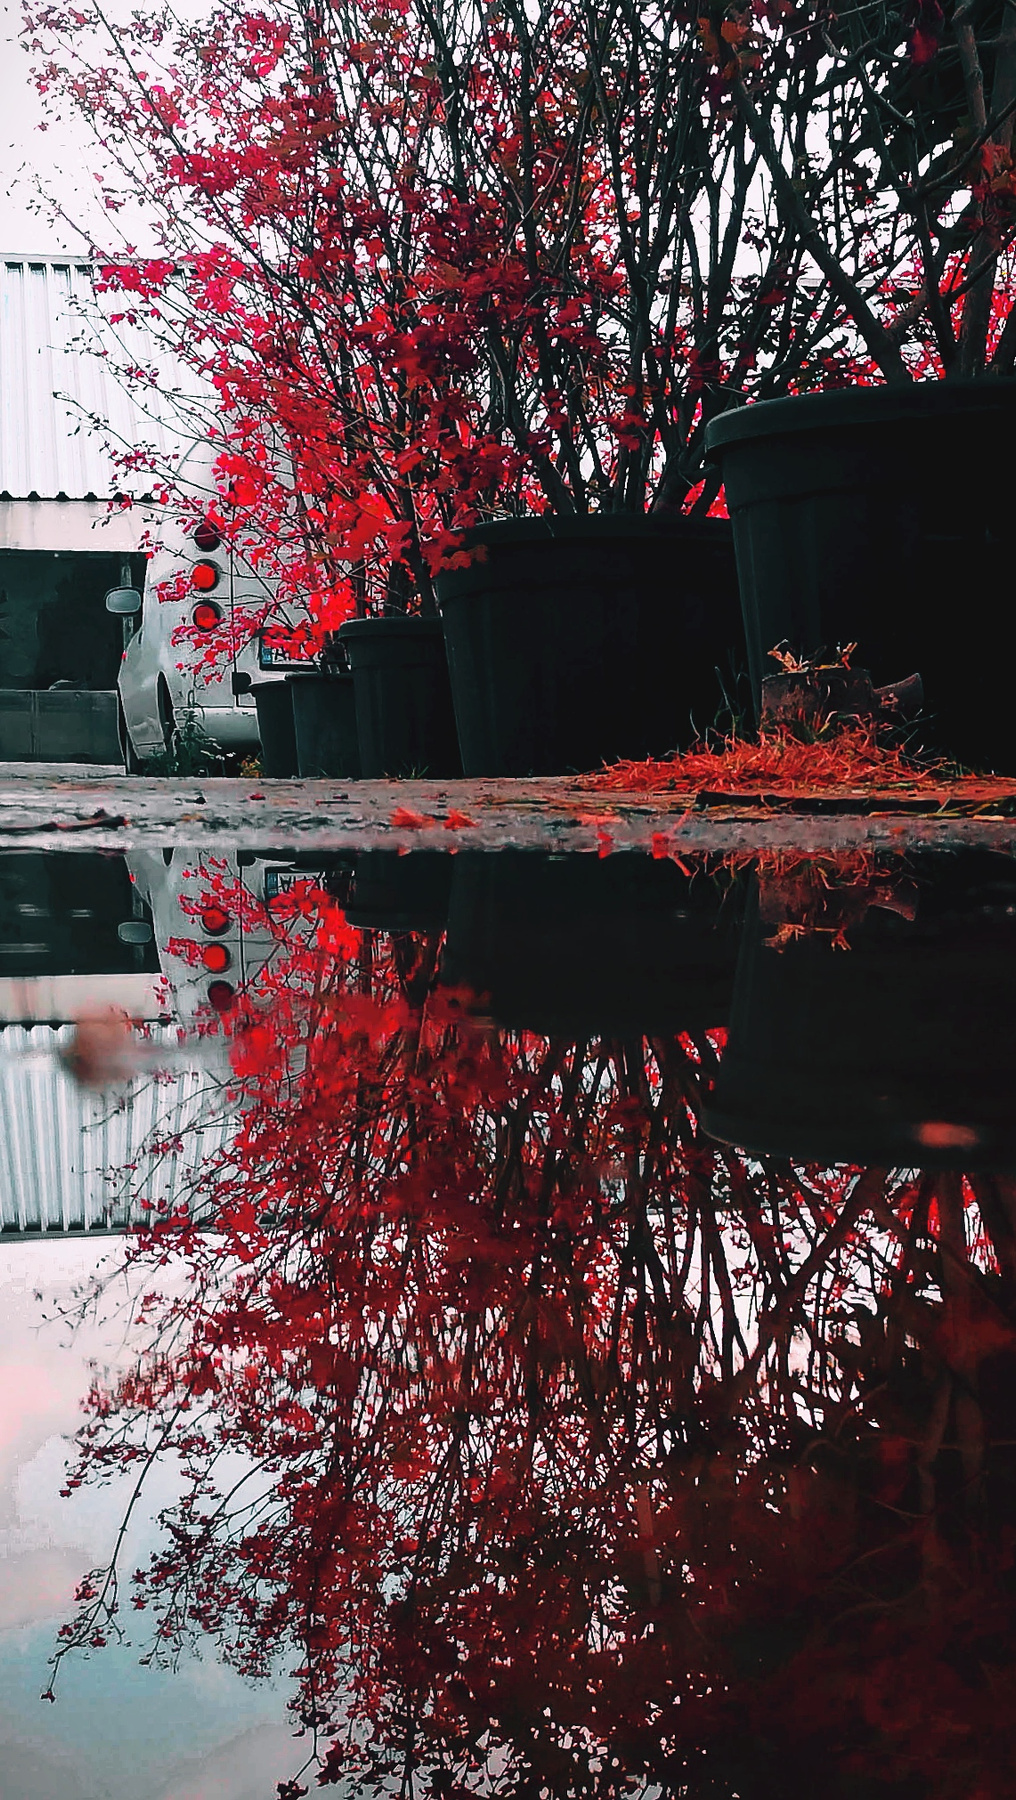 Ланос в листьях сакуры на отшибе токио(нет) ланос улица лужа кусты япония сакура